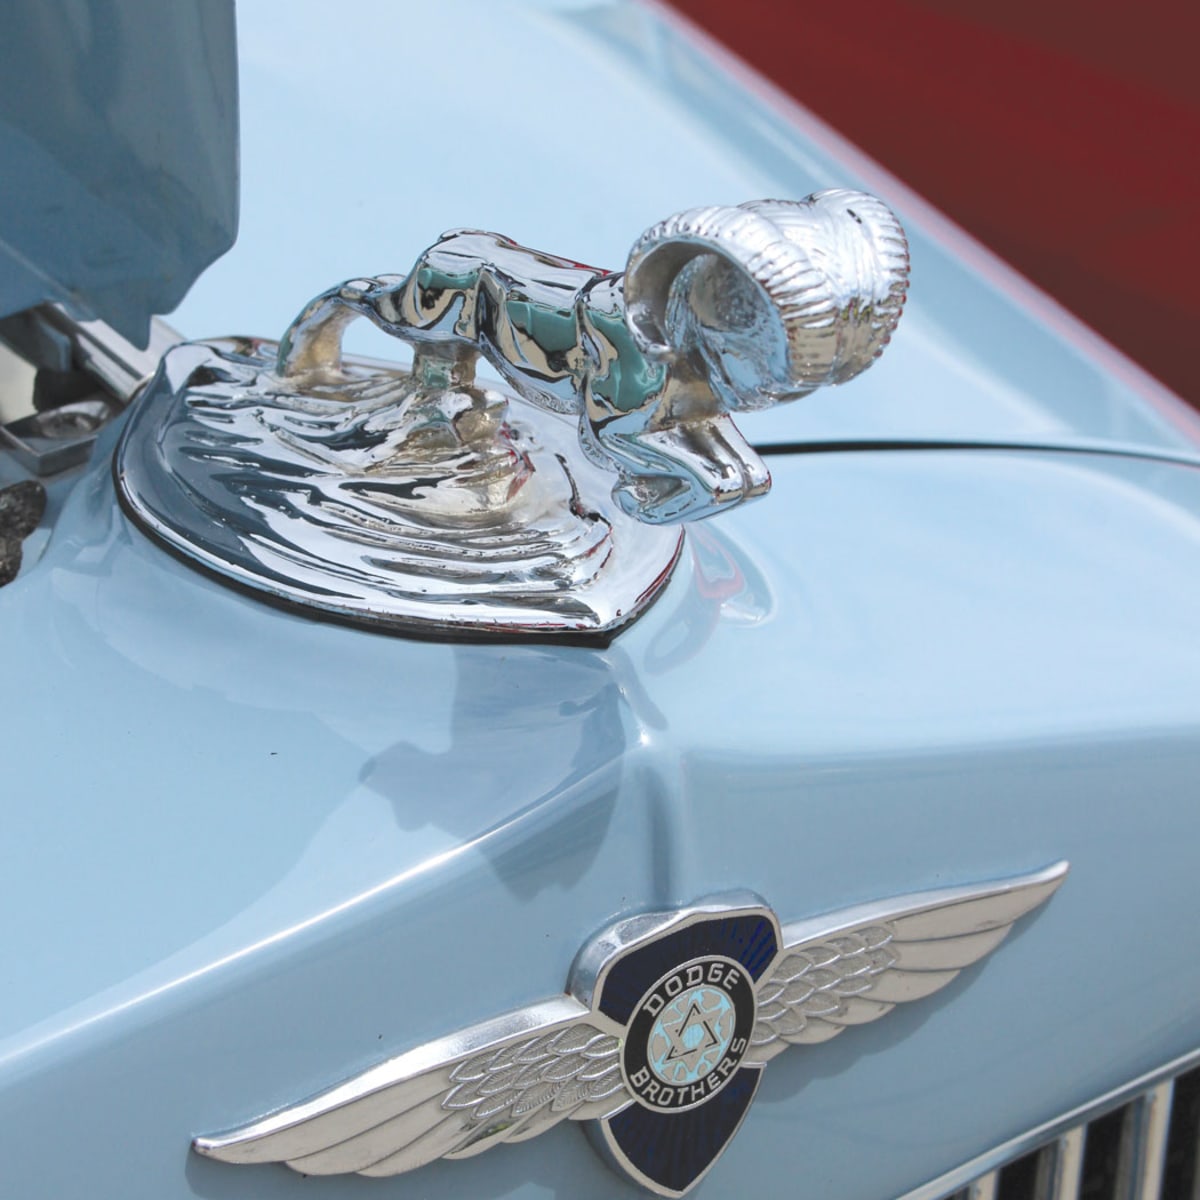 Bonnet ornaments – Auto Motor Klassiek – magazine about vintage cars